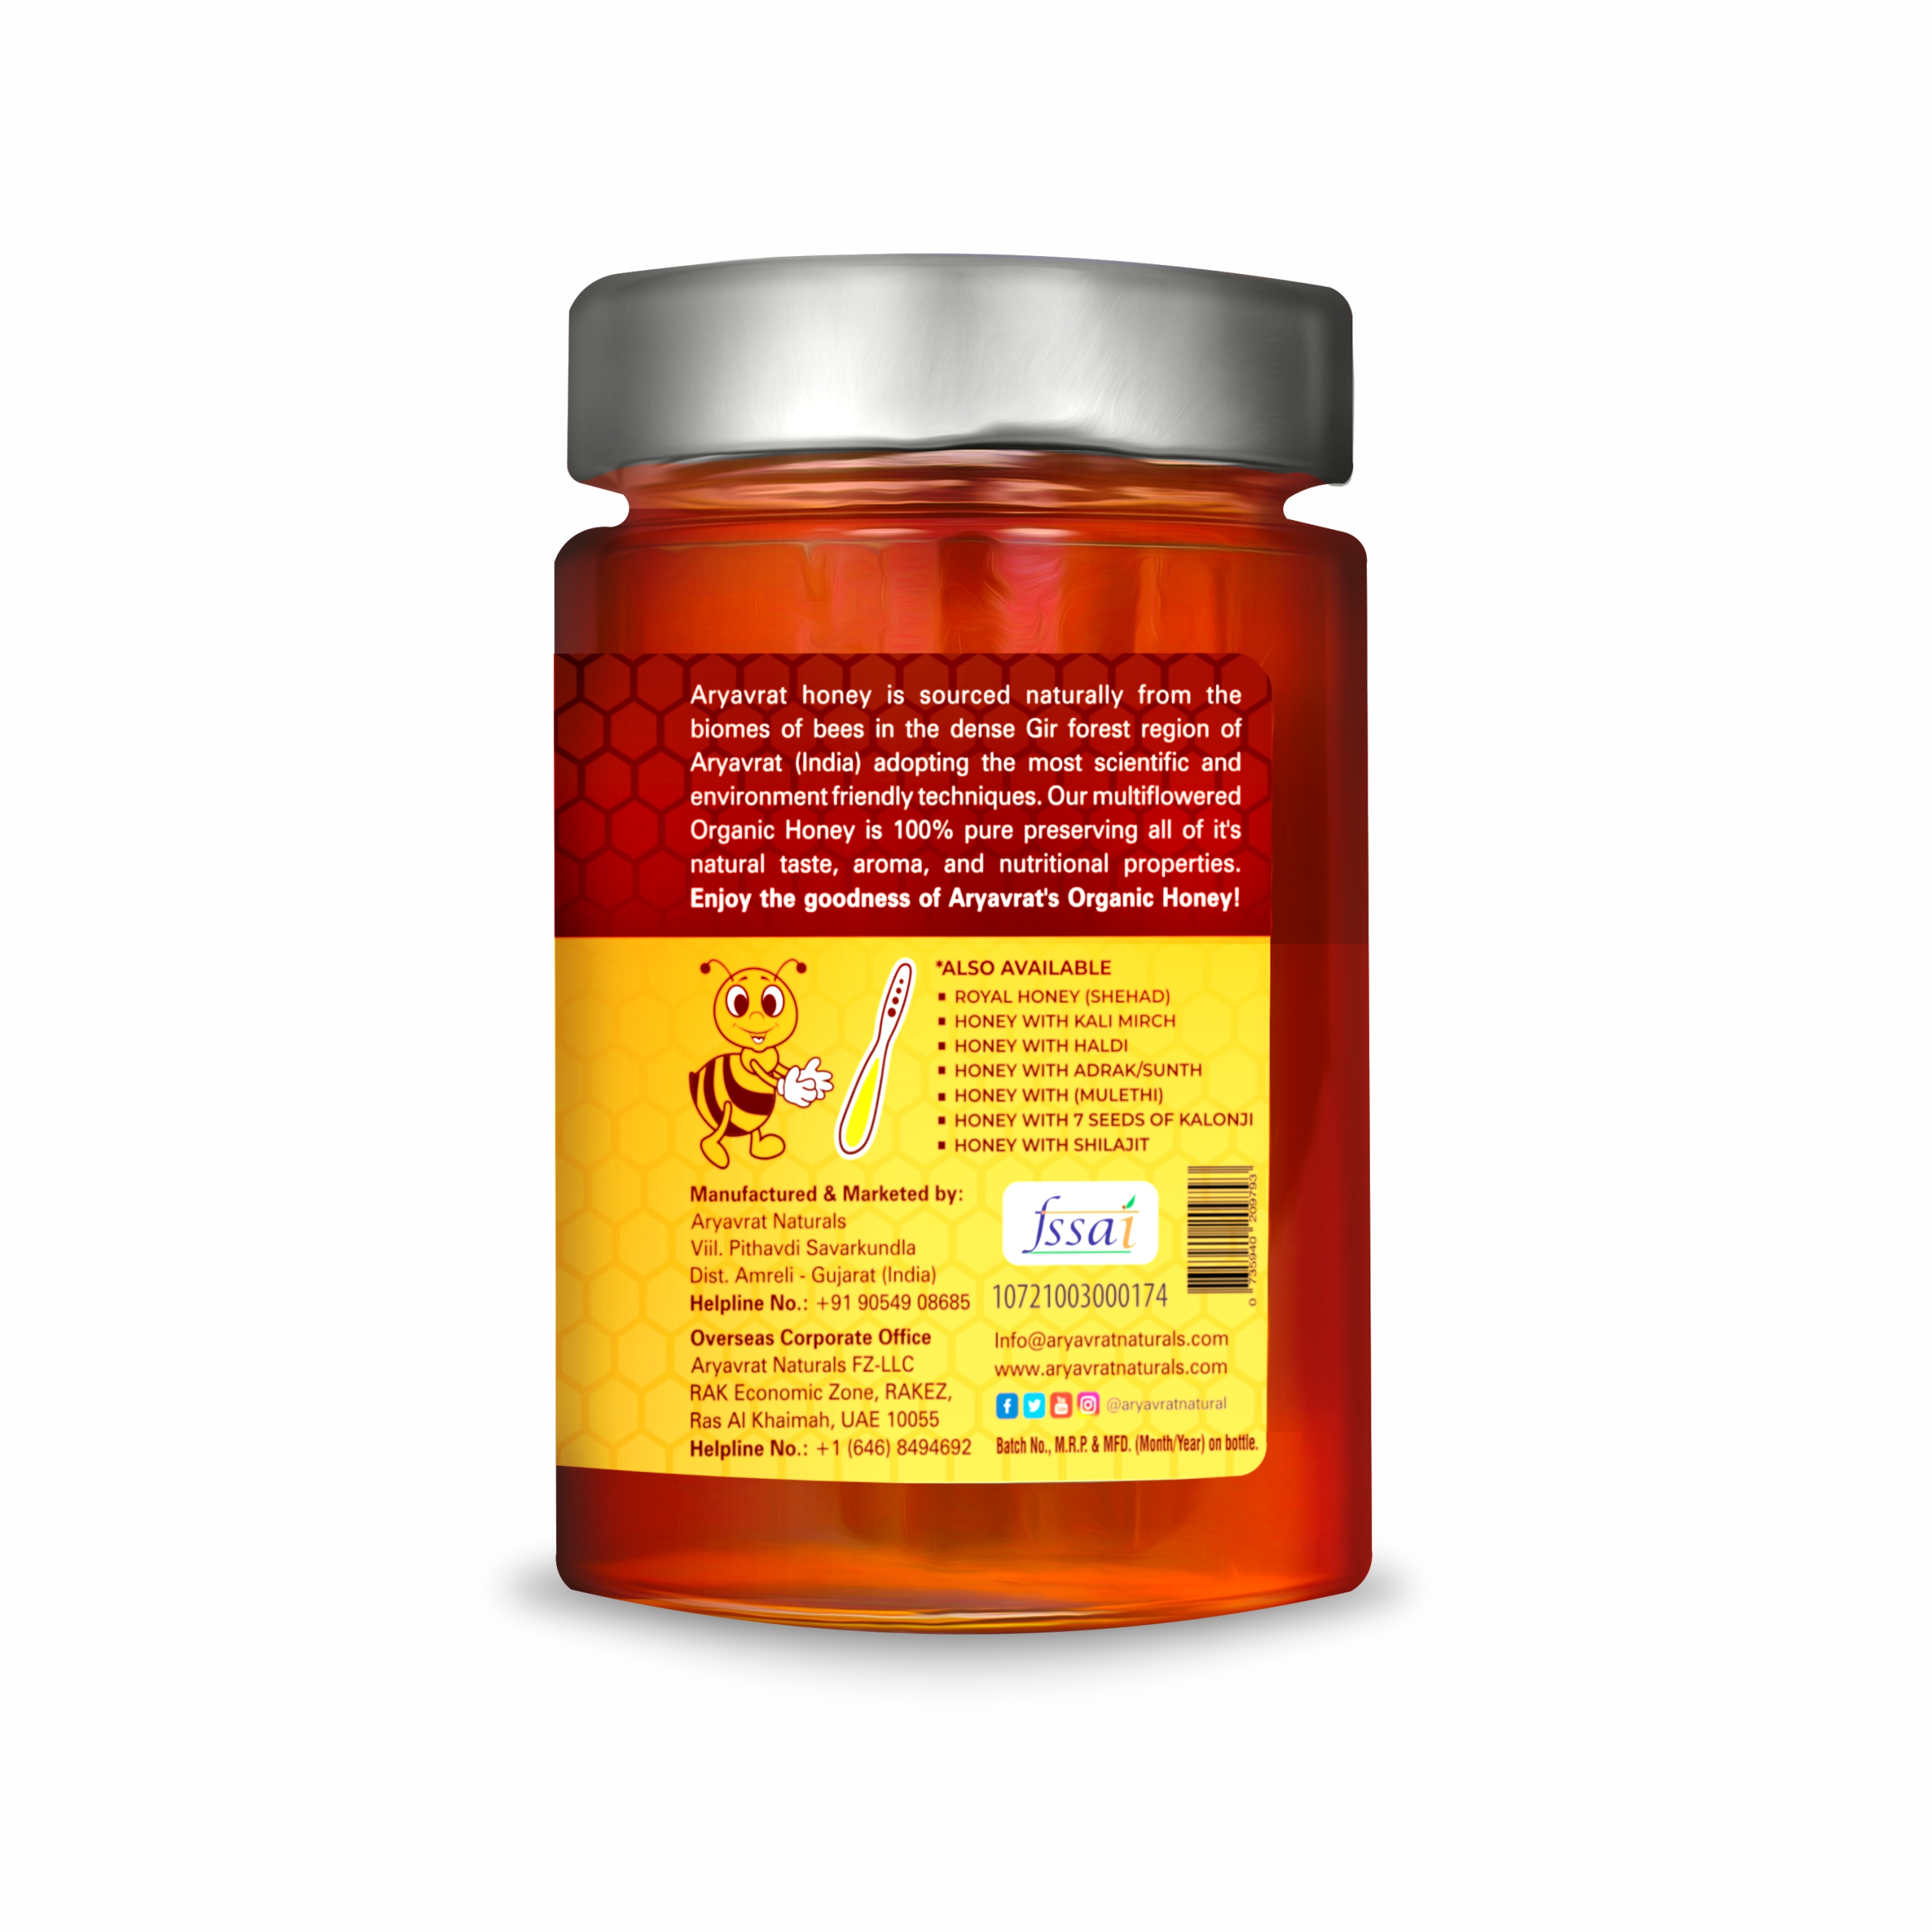 Buy Aryavrat Naturals Organic - Raw Honey 100% Pure Organic and Natural Multiflora Honey at Best Price Online